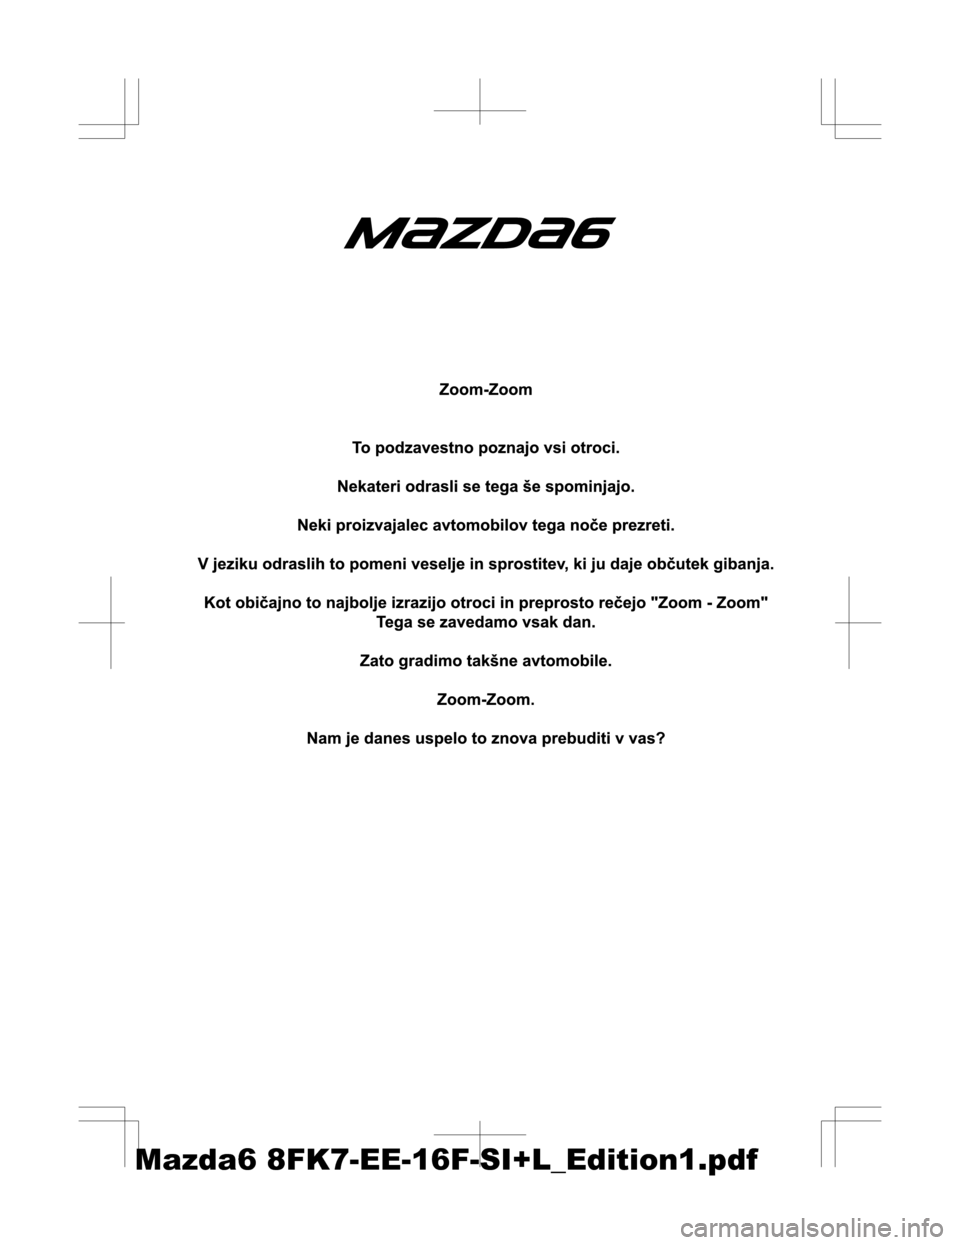 MAZDA MODEL 6 2016  Priročnik za lastnika (in Slovenian) Mazda6 8FK7-EE-16F-SI+L_Edition1.pdf 